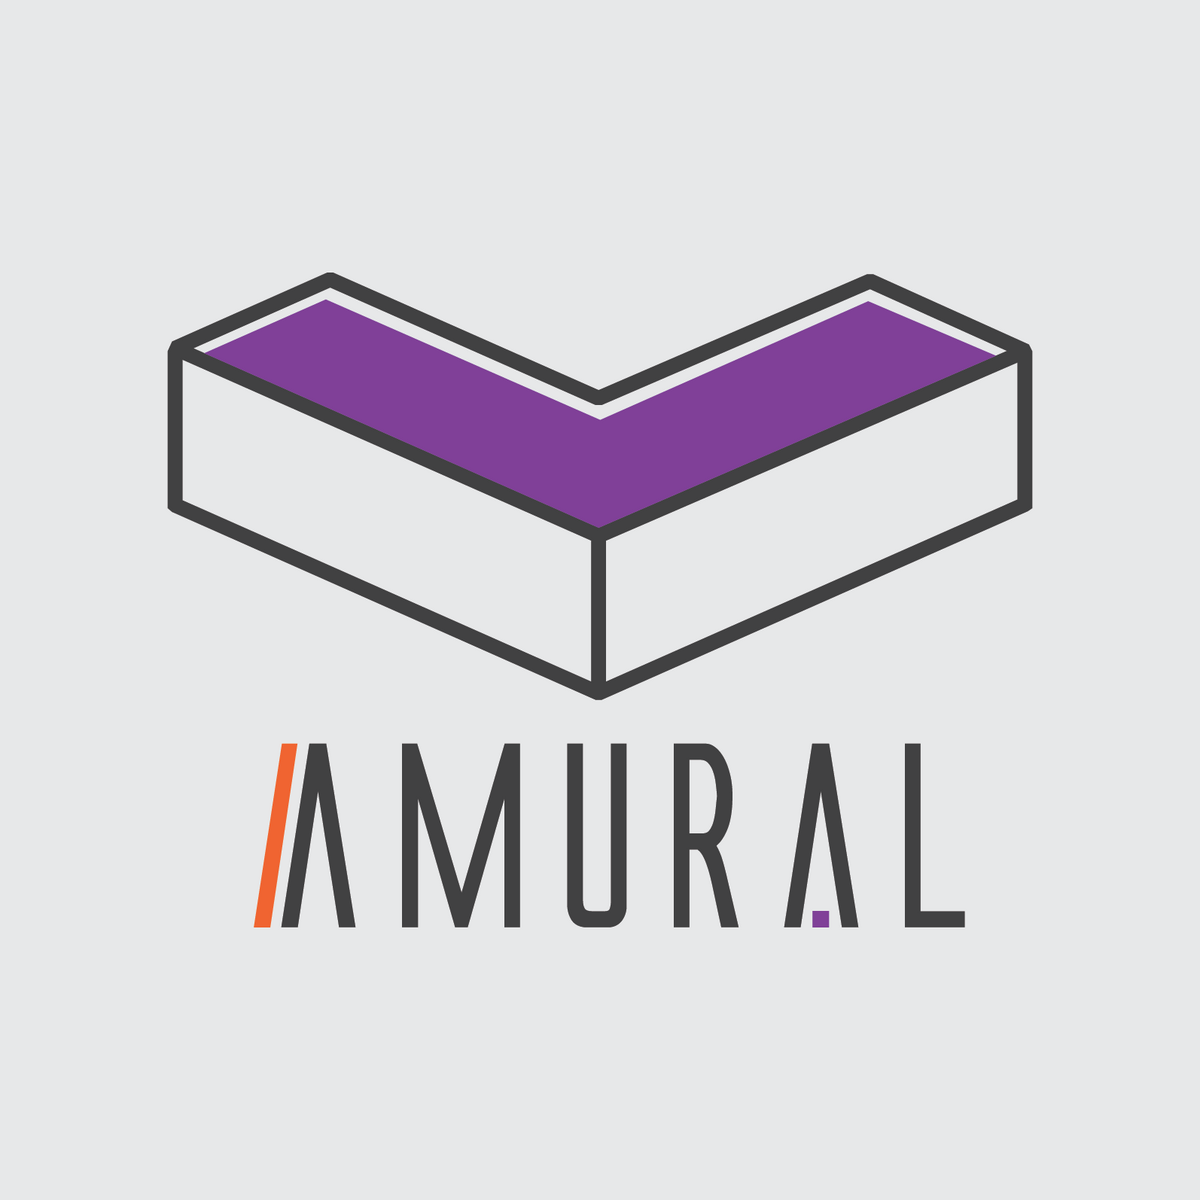 Asociația Amural